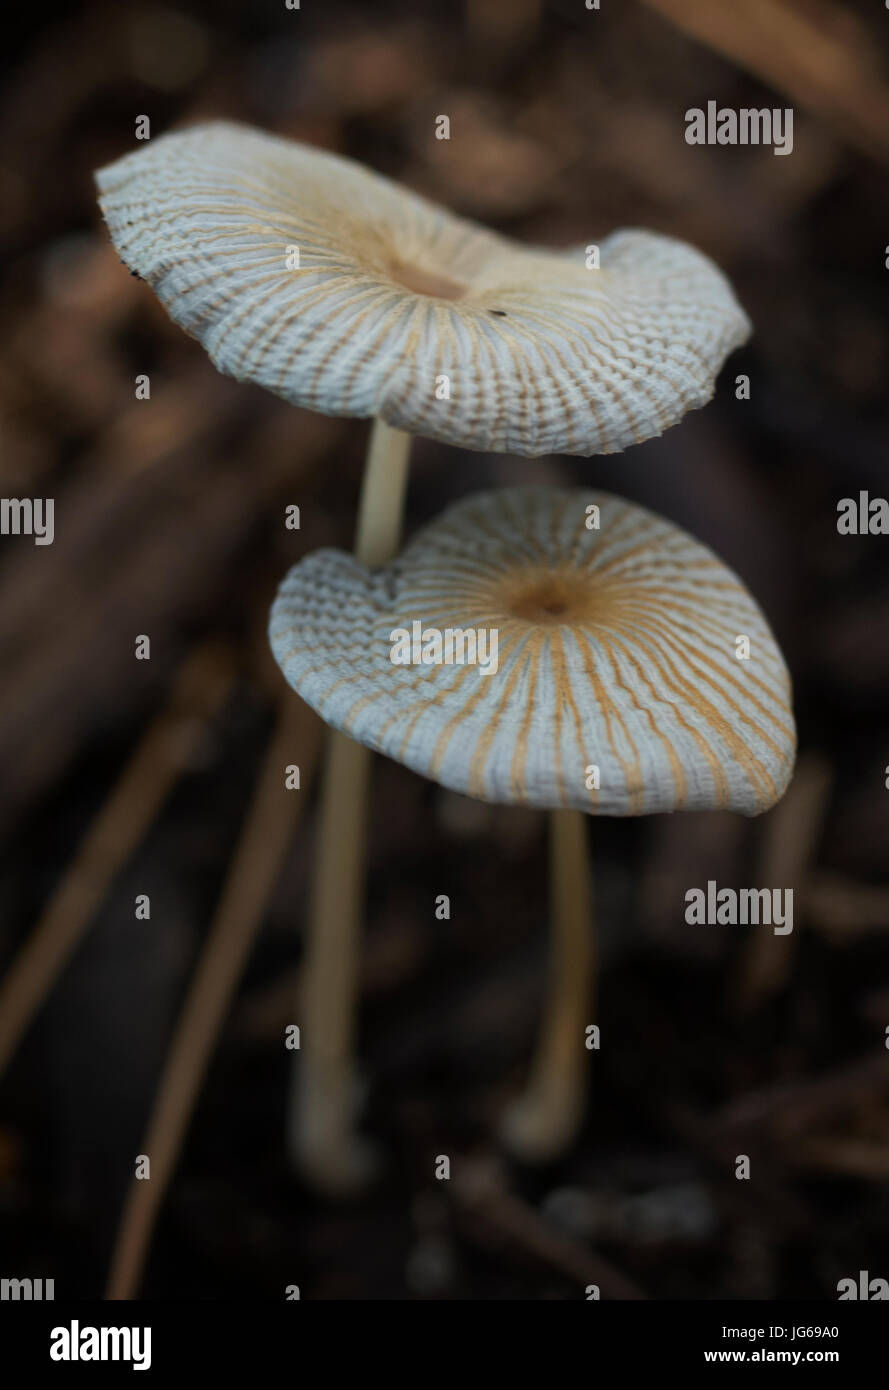 Marasmus mushrooms (Marasmioid Mushrooms). Stock Photo